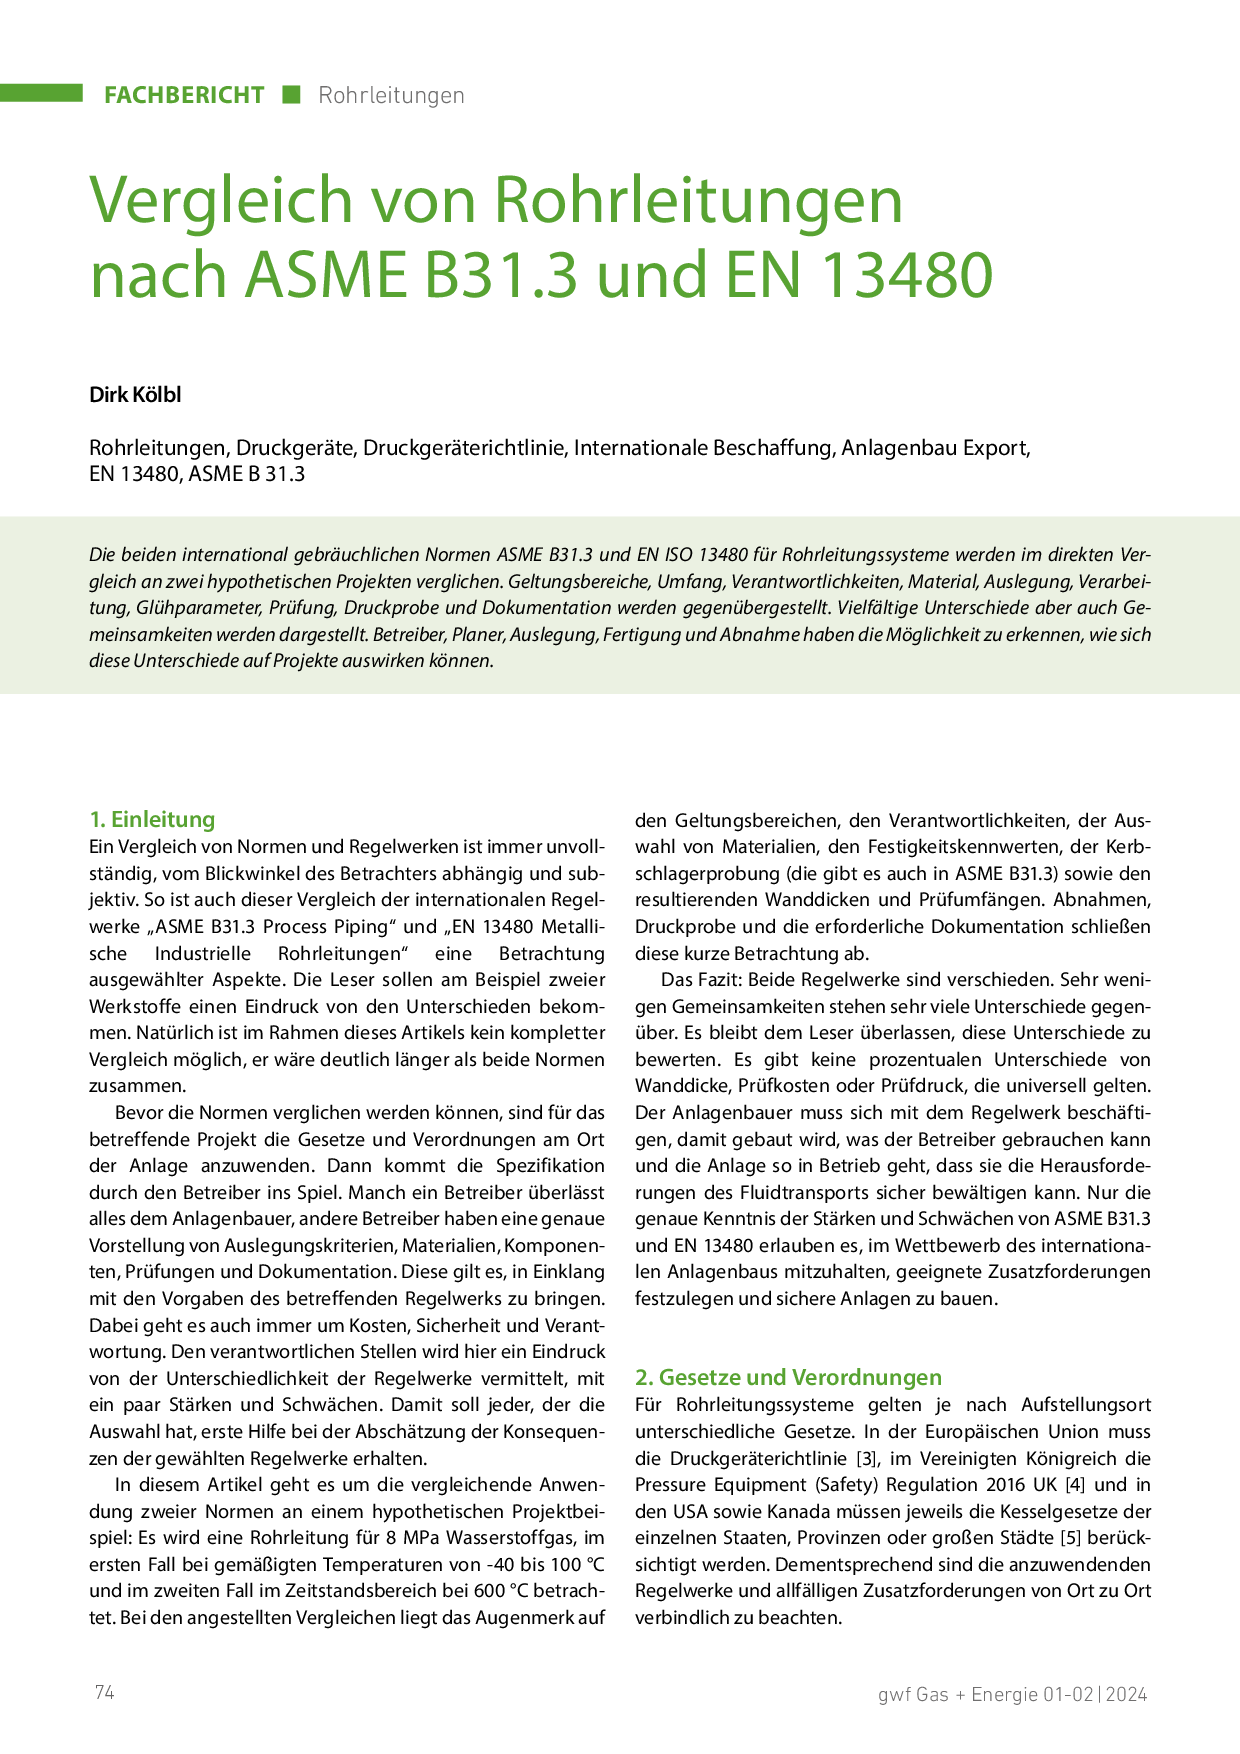 Vergleich von Rohrleitungen nach ASME B31.3 und EN 13480